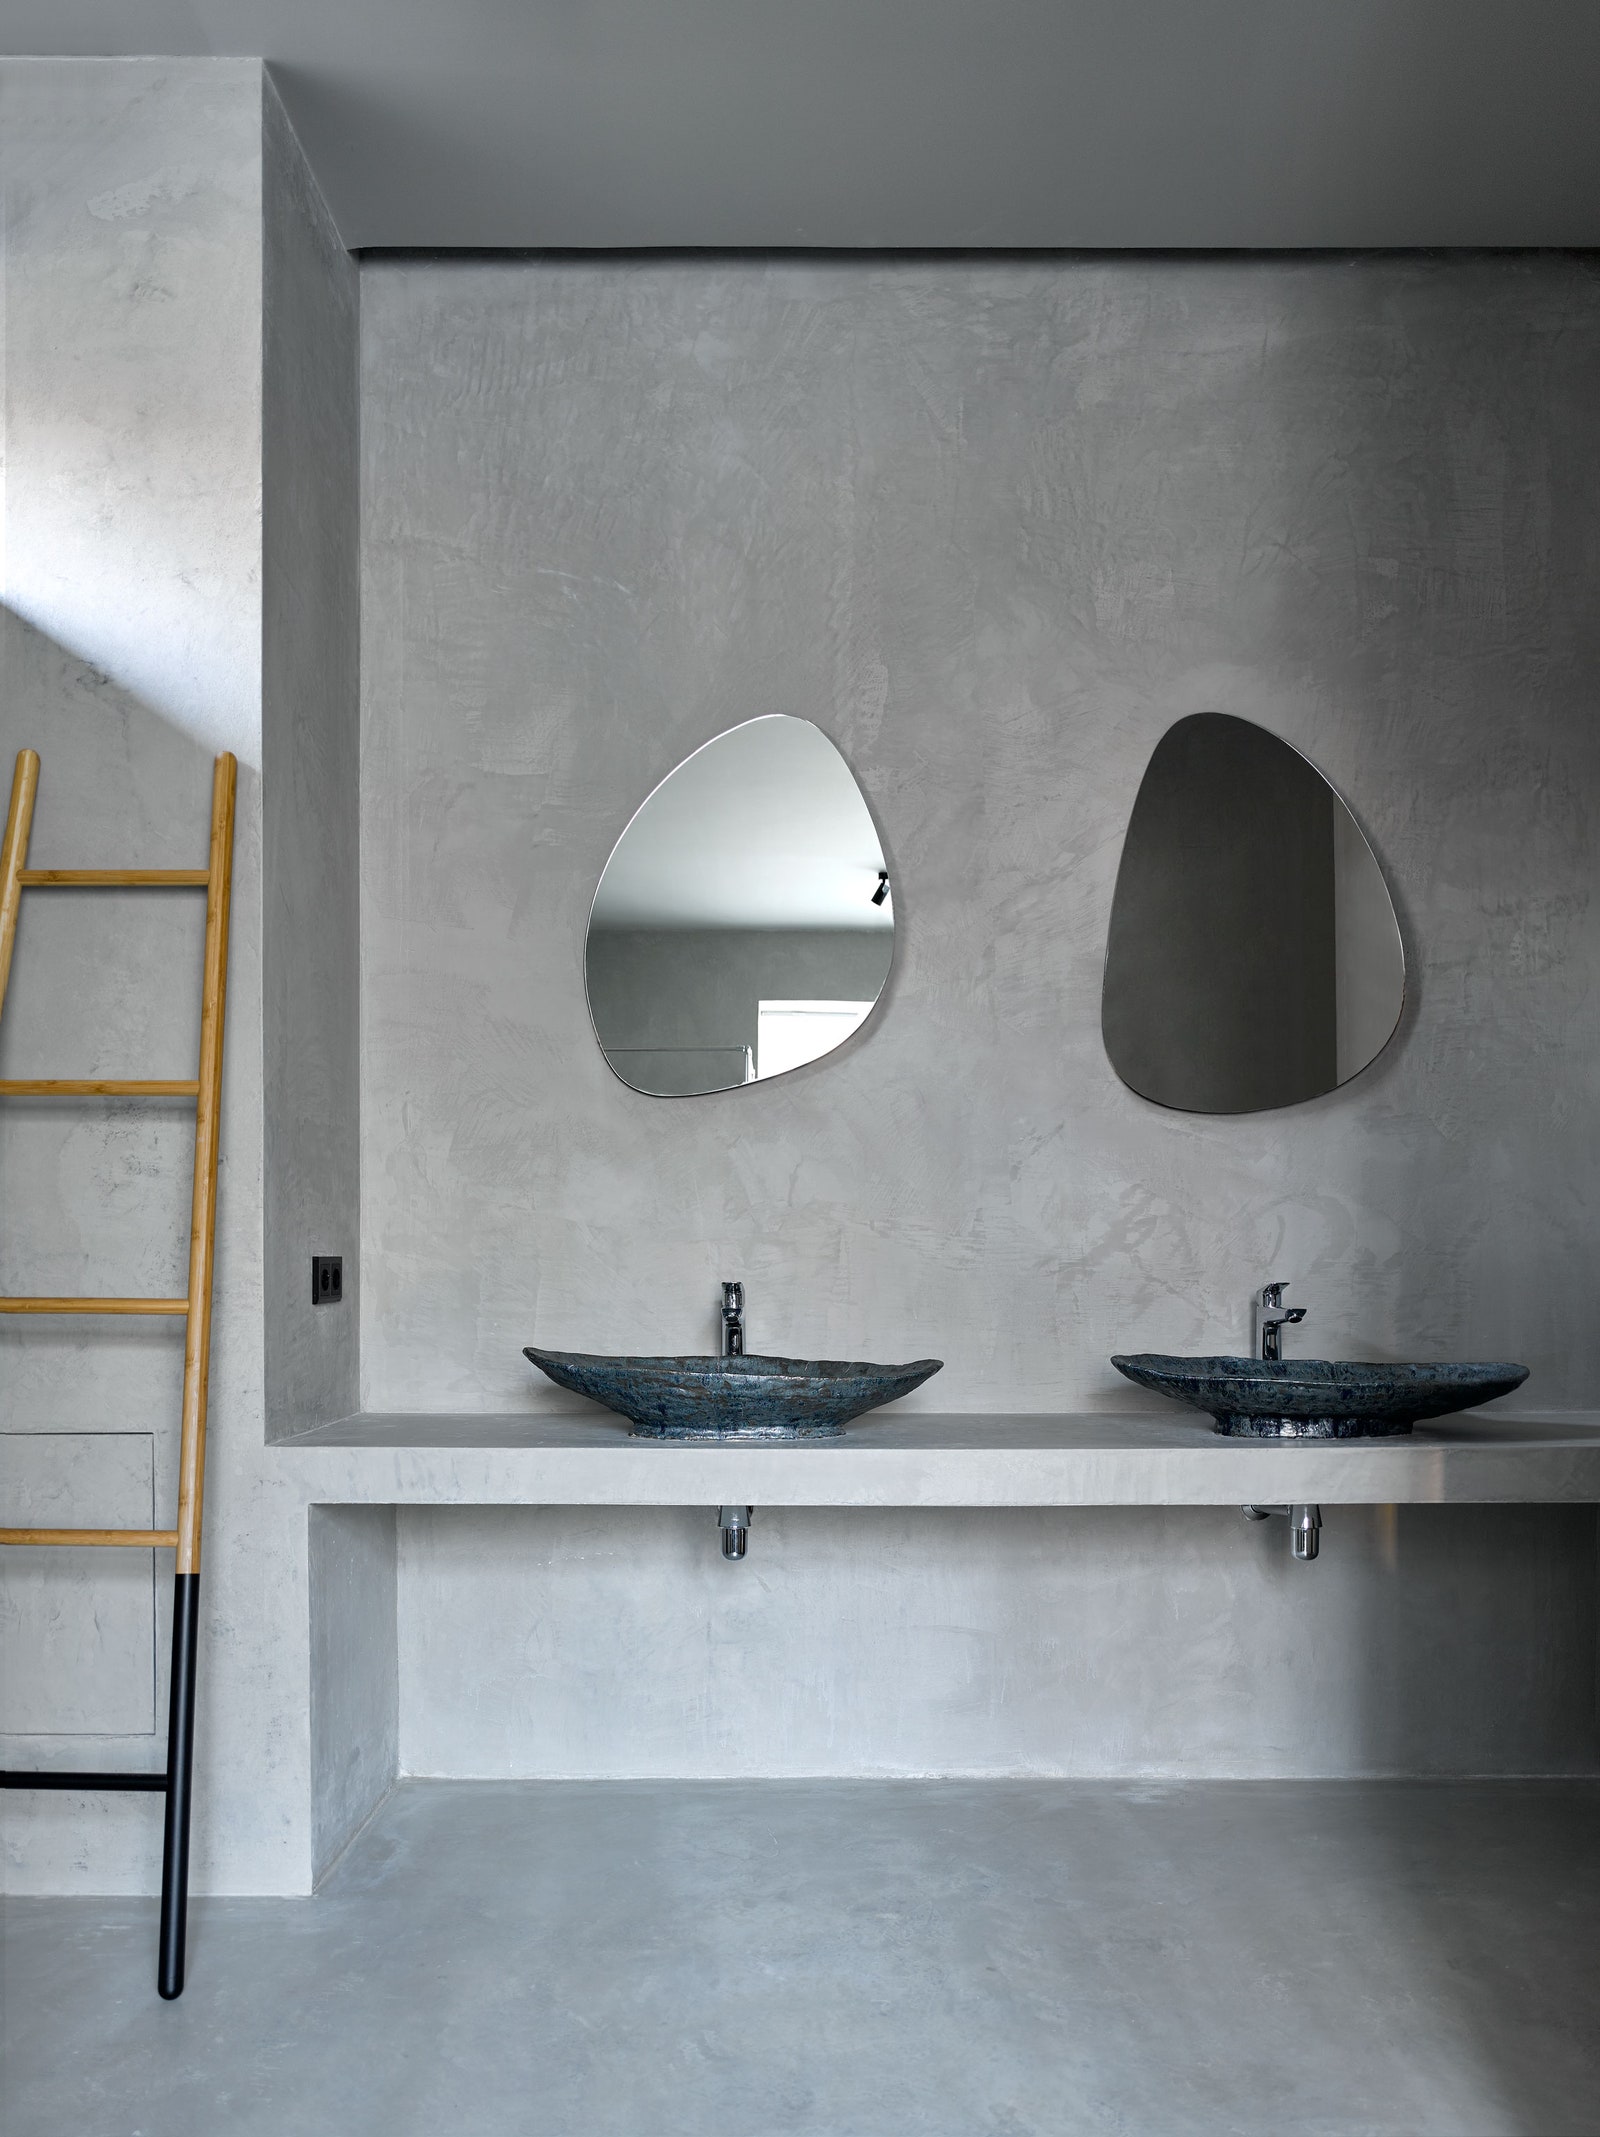 Гостевая ванная комната. Керамические раковины по дизайну студии 01001011.